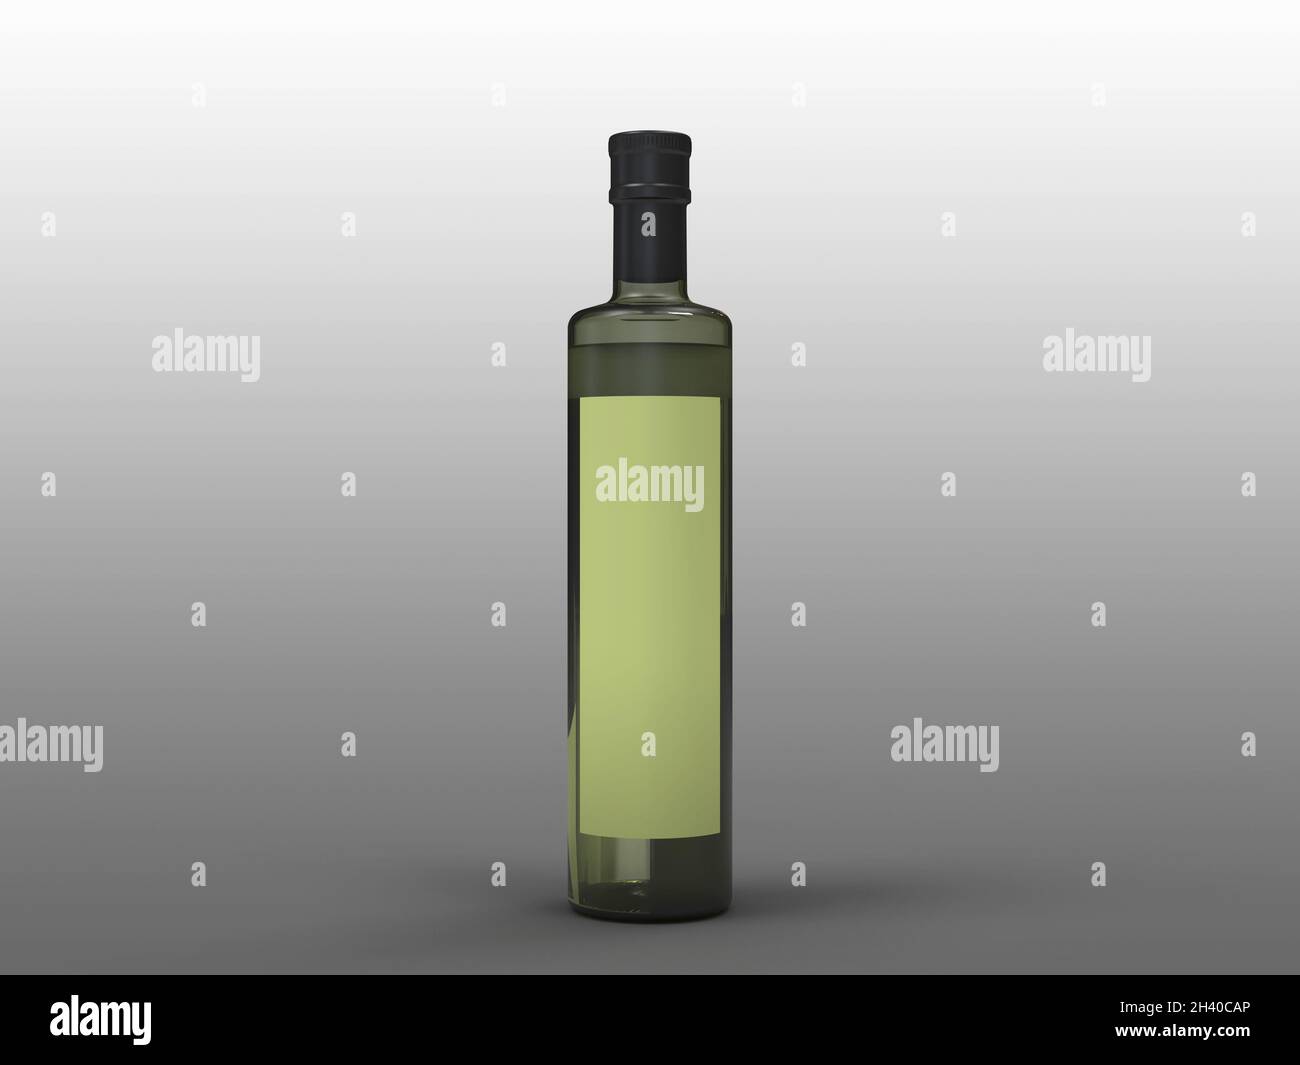 rendu 3d d'une bouteille d'huile avec une étiquette verte vide Banque D'Images